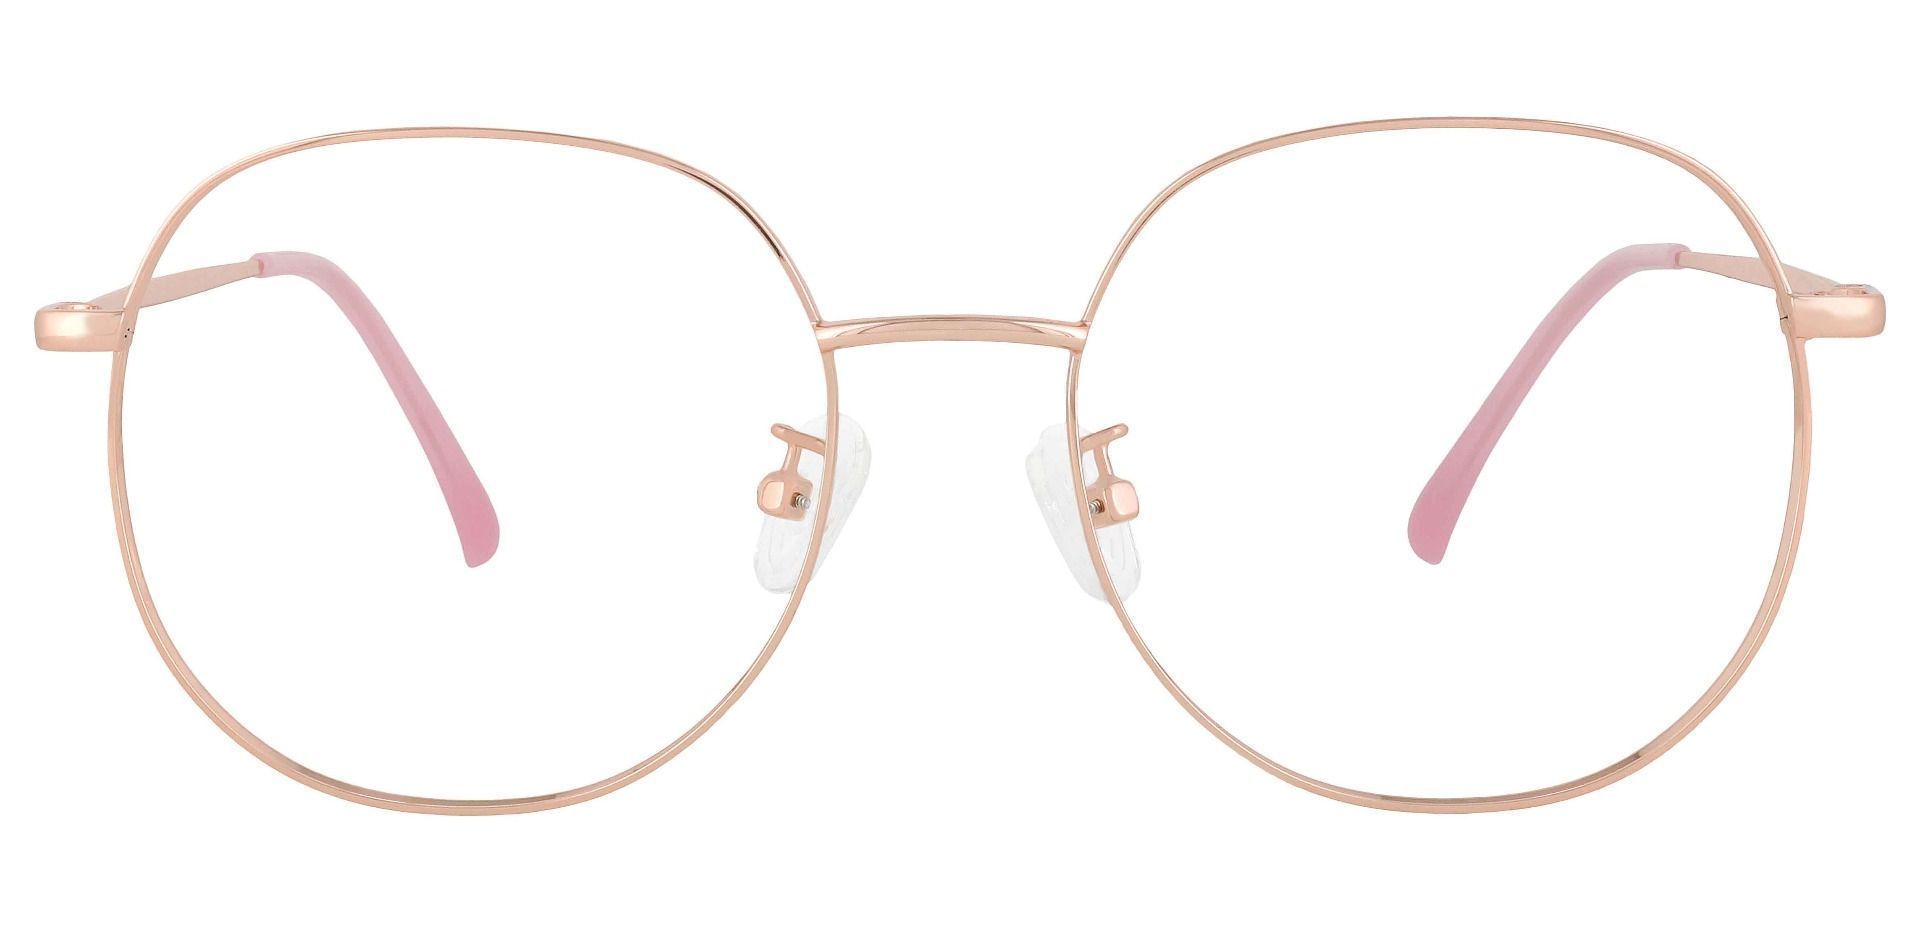 Holden Oval Prescription Glasses - Rose Gold | Women's Eyeglasses ...